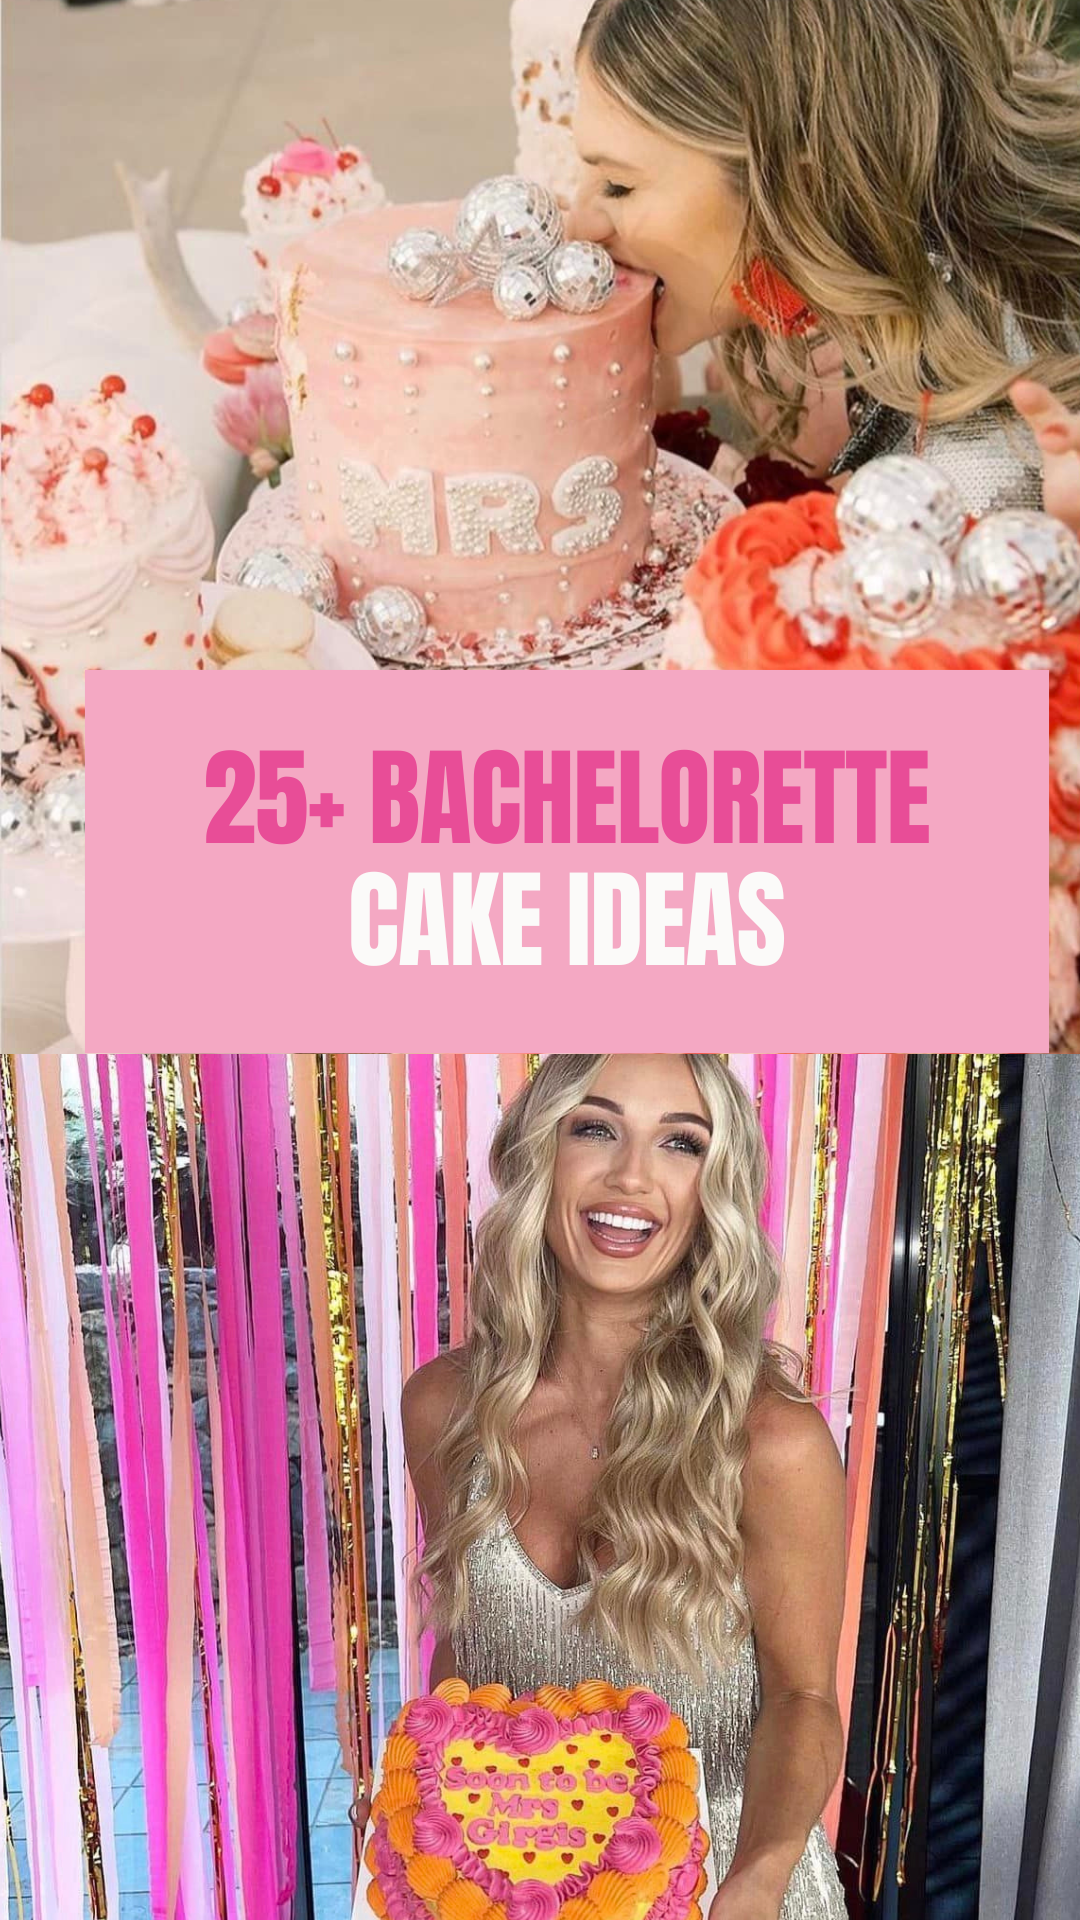 Bachelorette cake ideas